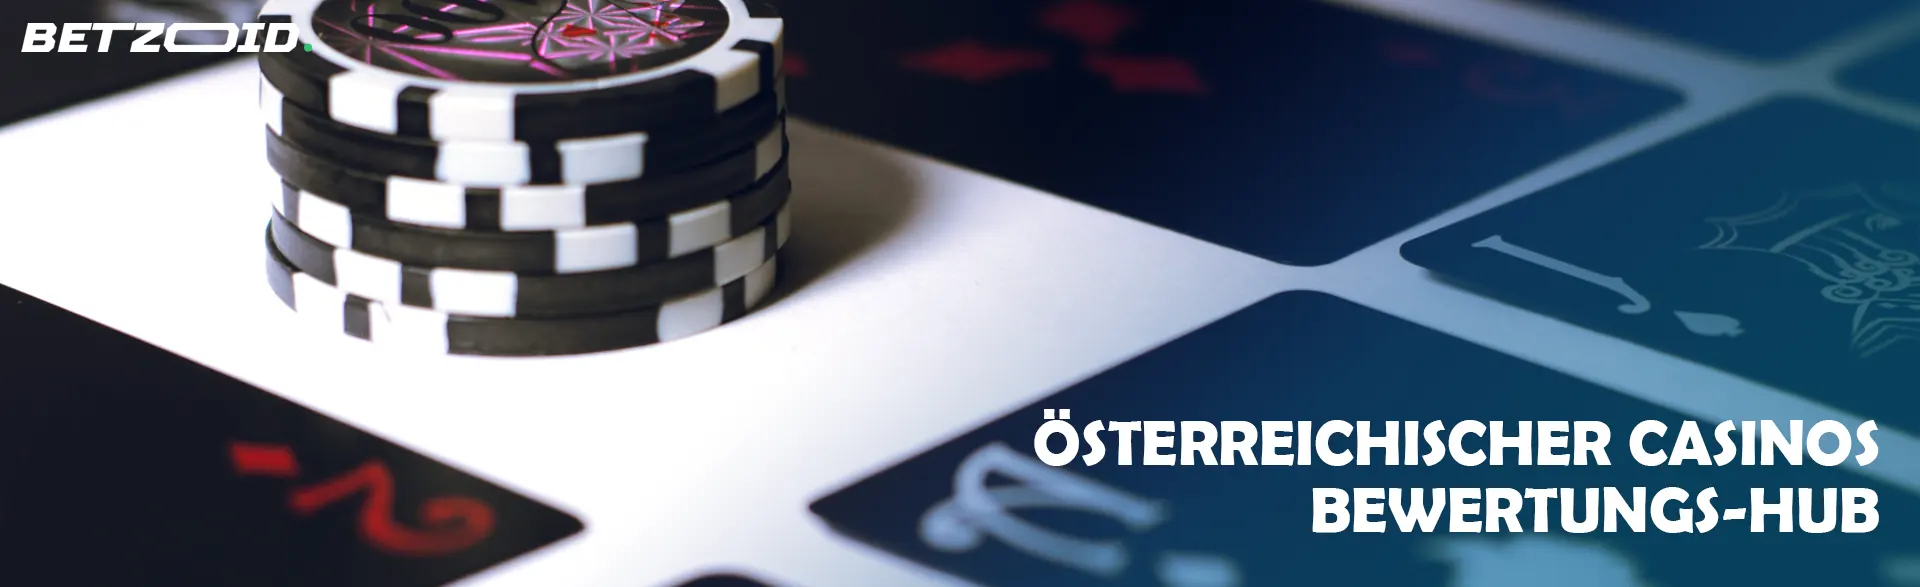 Österreichischer Casinos Bewertungs-Hub.